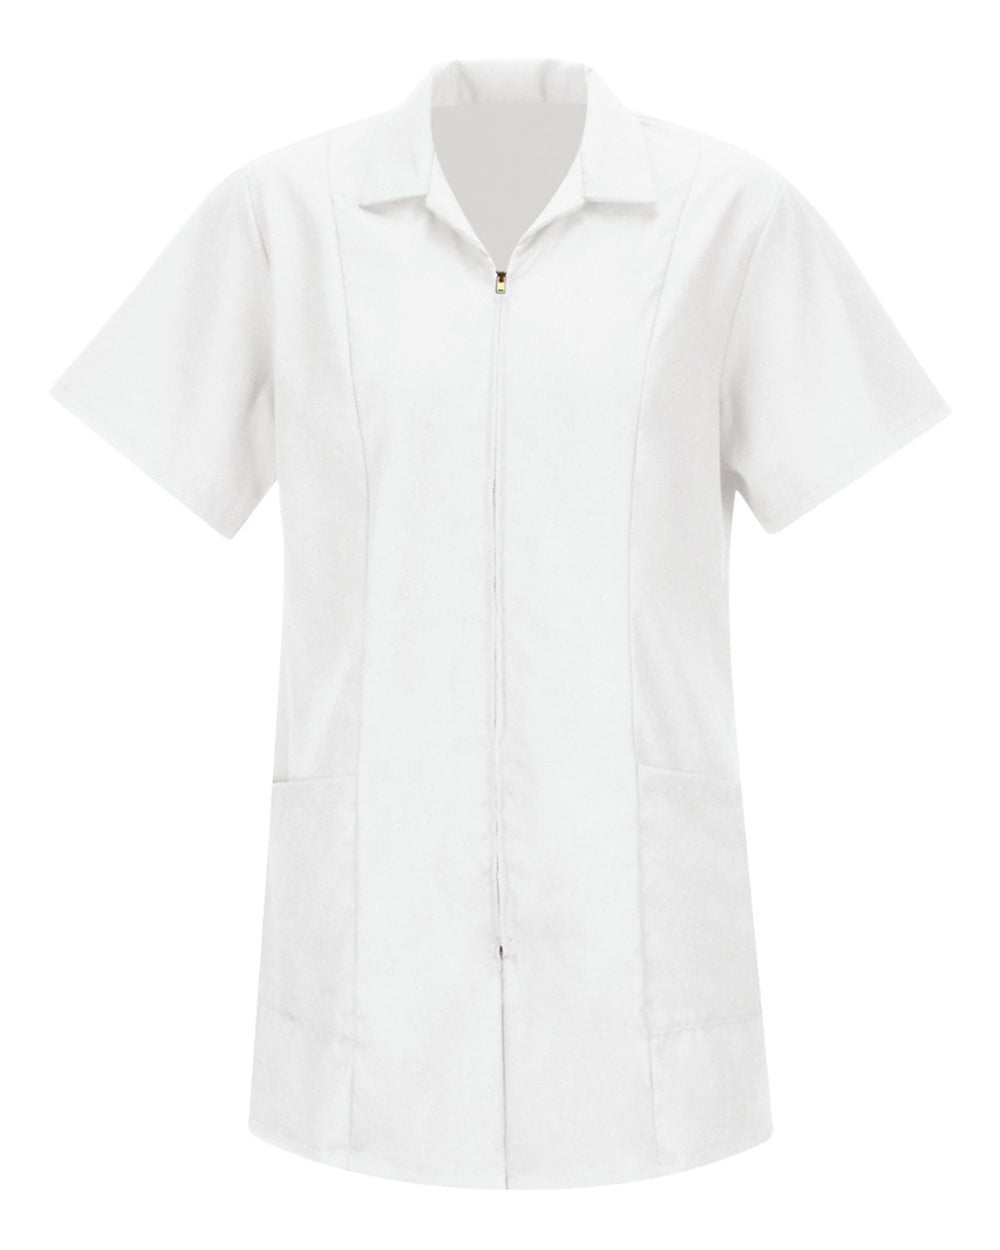 Women's Short Sleeve Zip-front Smock - Walmart.com